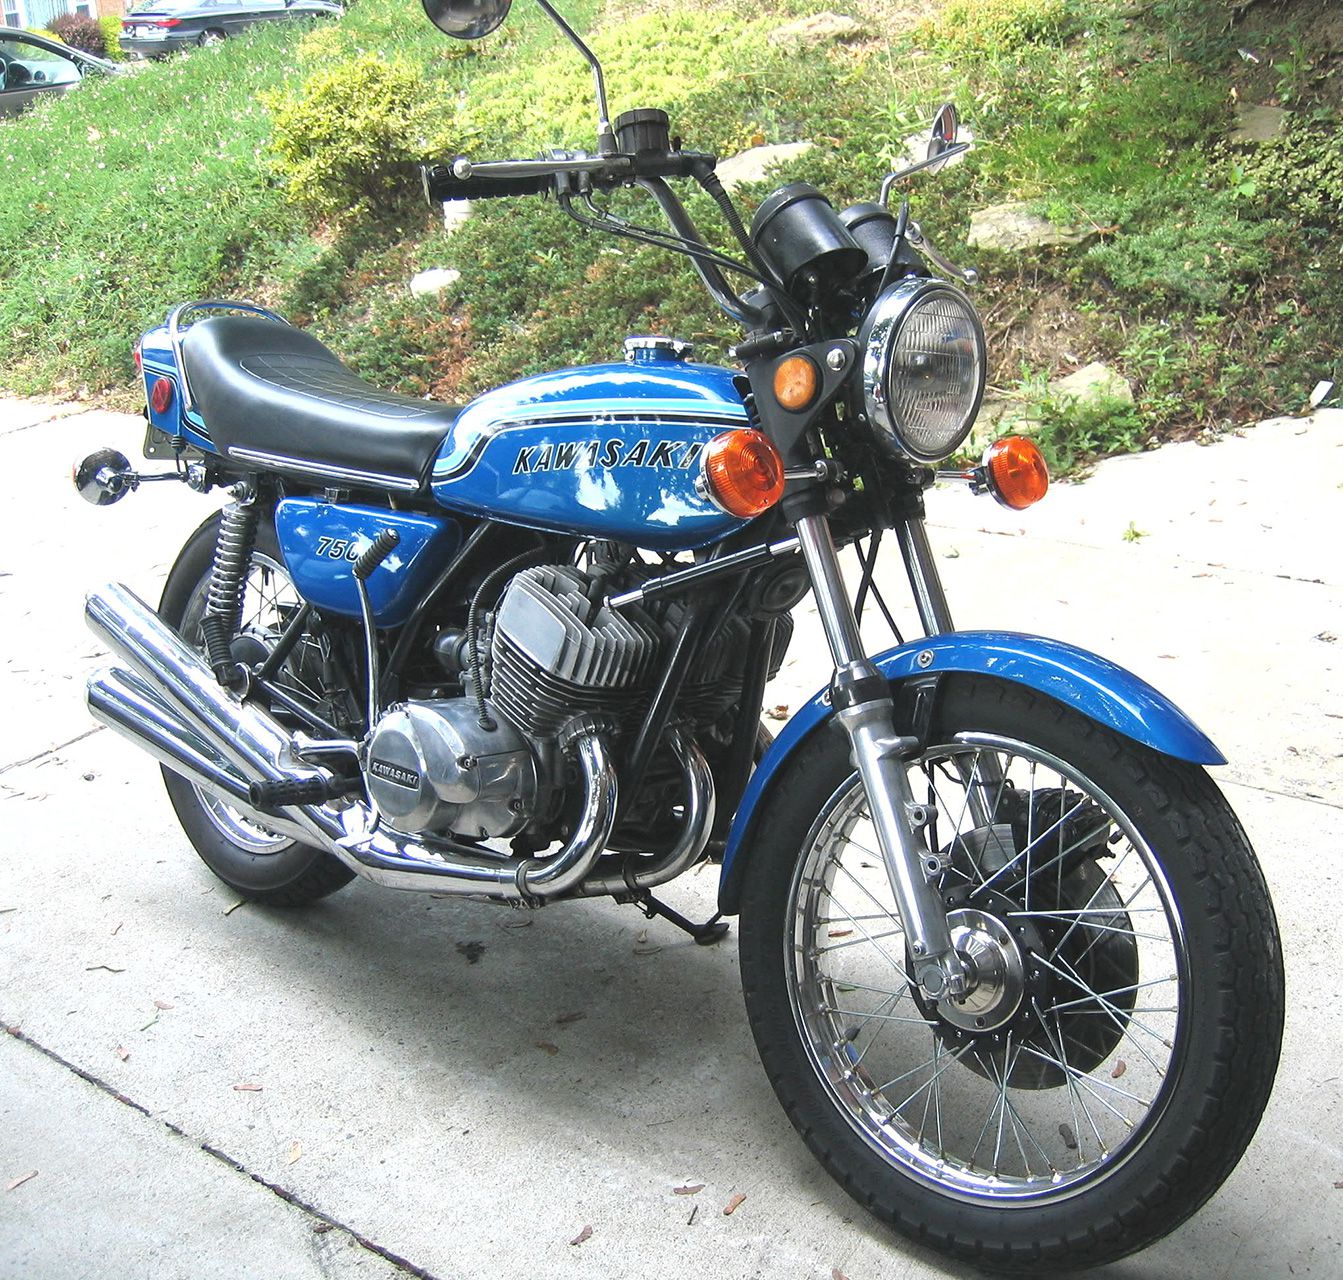 Kawasaki H2 750 Motorcycle History, REMEMBERED | Cycle World